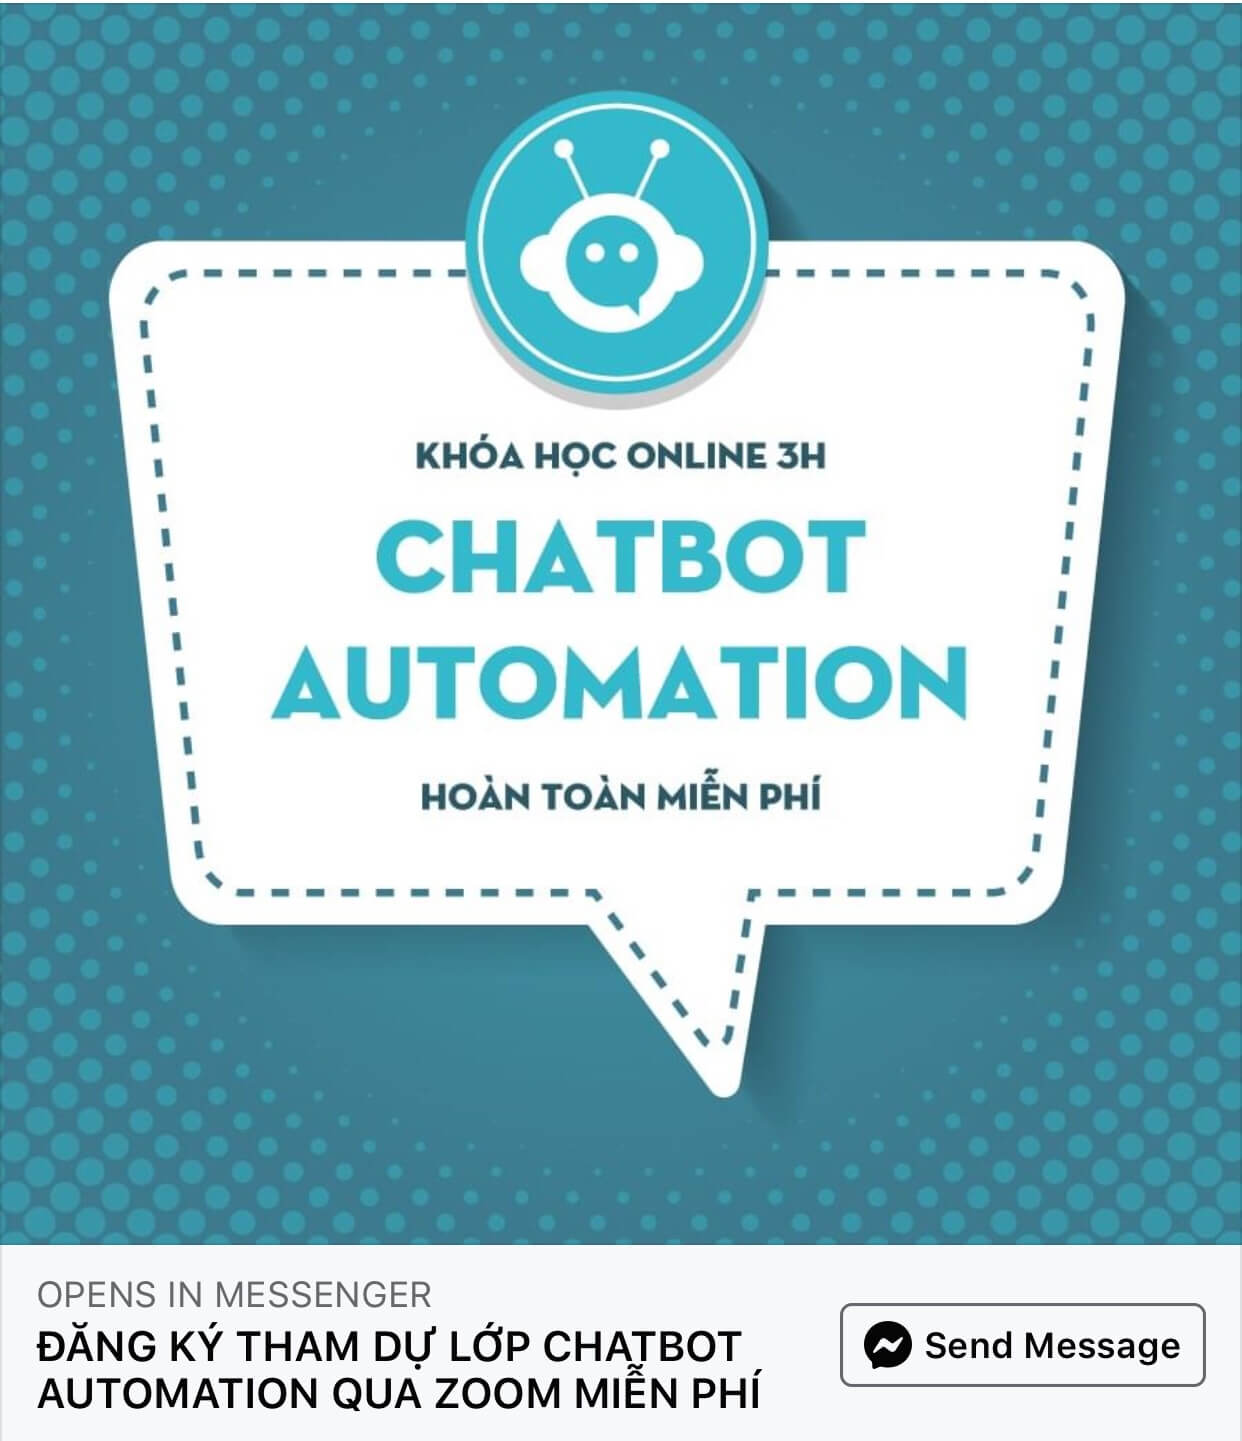 Fchat lựa chọn Zoom Meeeting để tổ chức khoá học Chatbot miễn phí